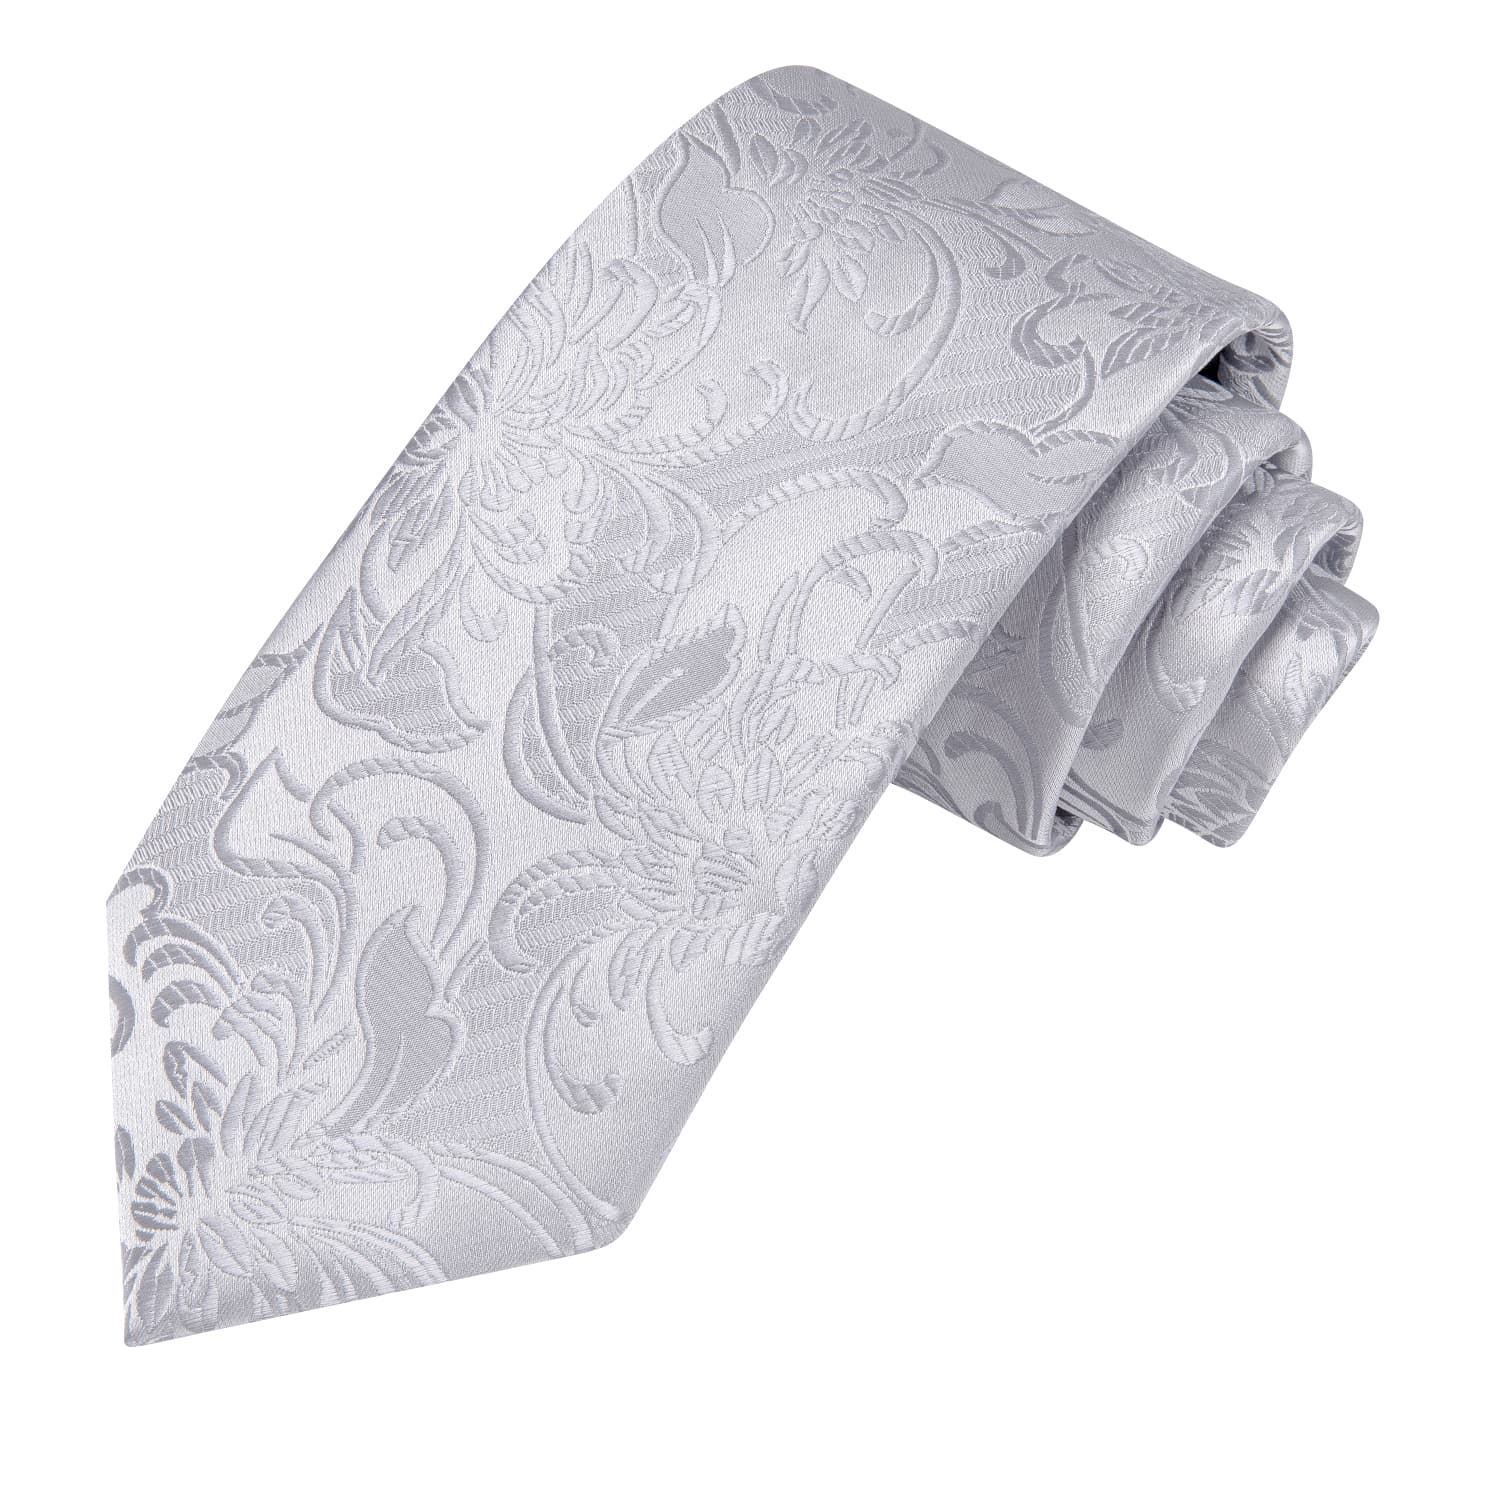  Floral Silver Grey Tie Jacquard Silk Necktie Set for Men